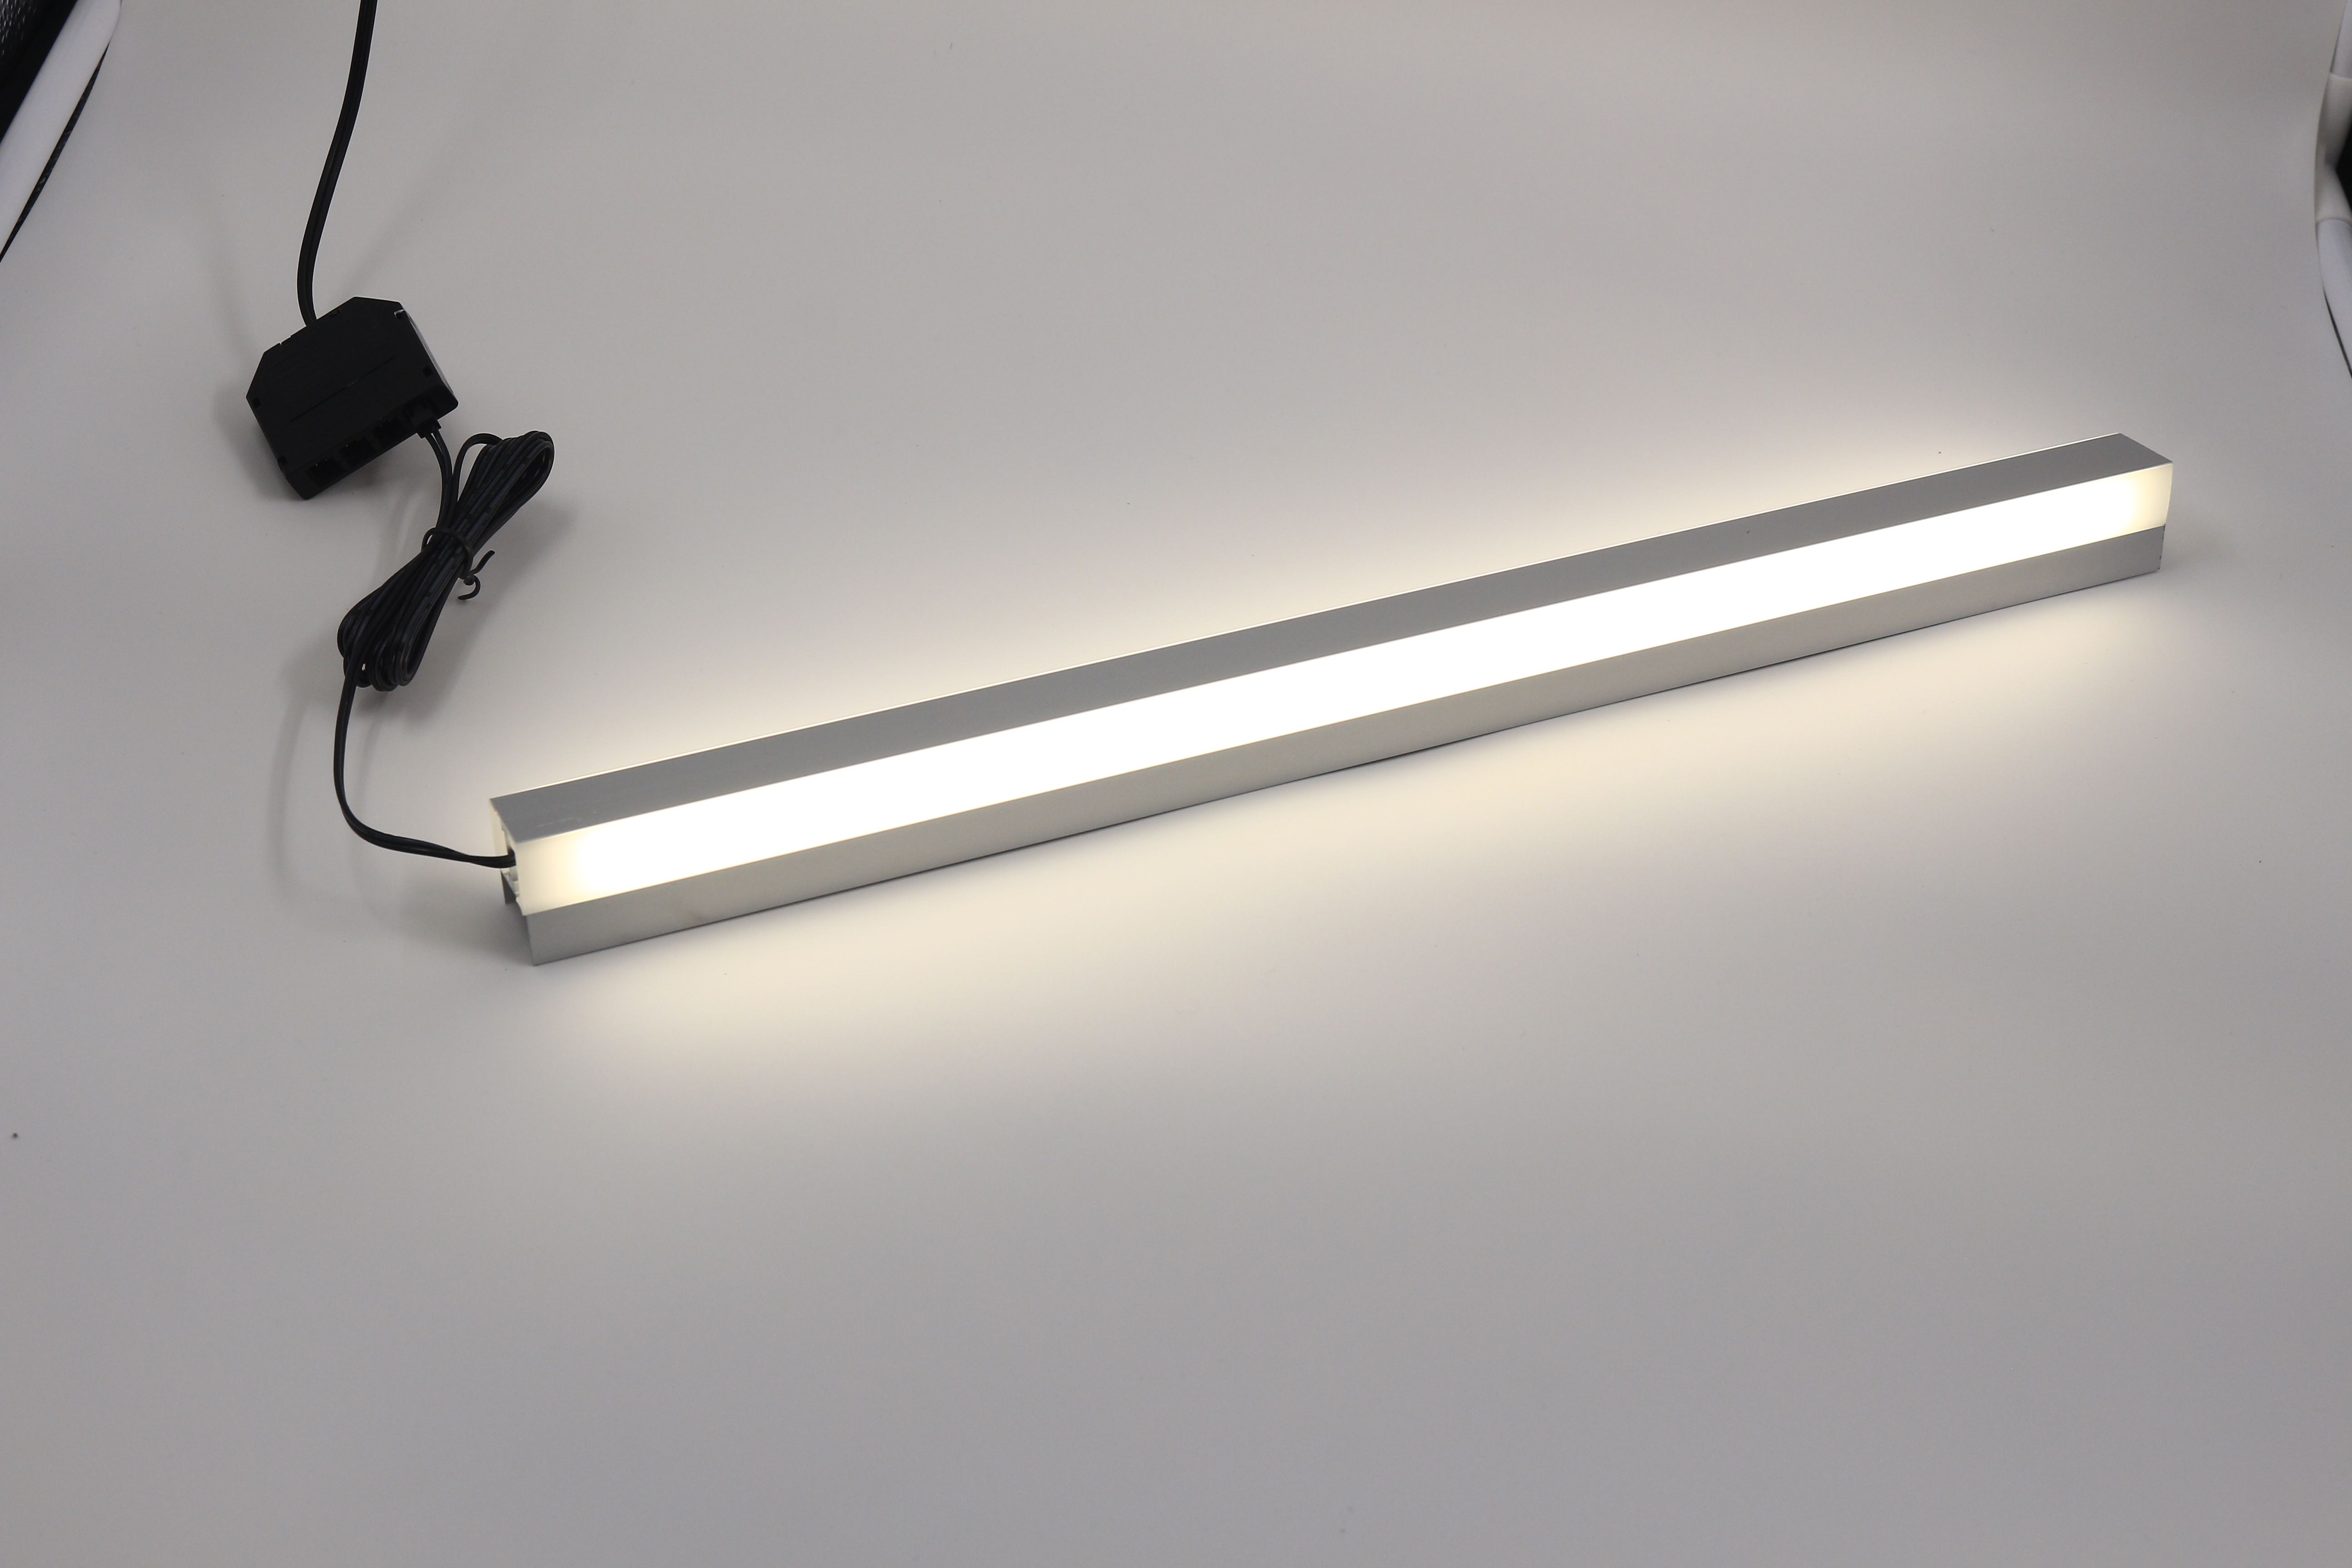 LED硬灯条的特点及安装使用注意事项